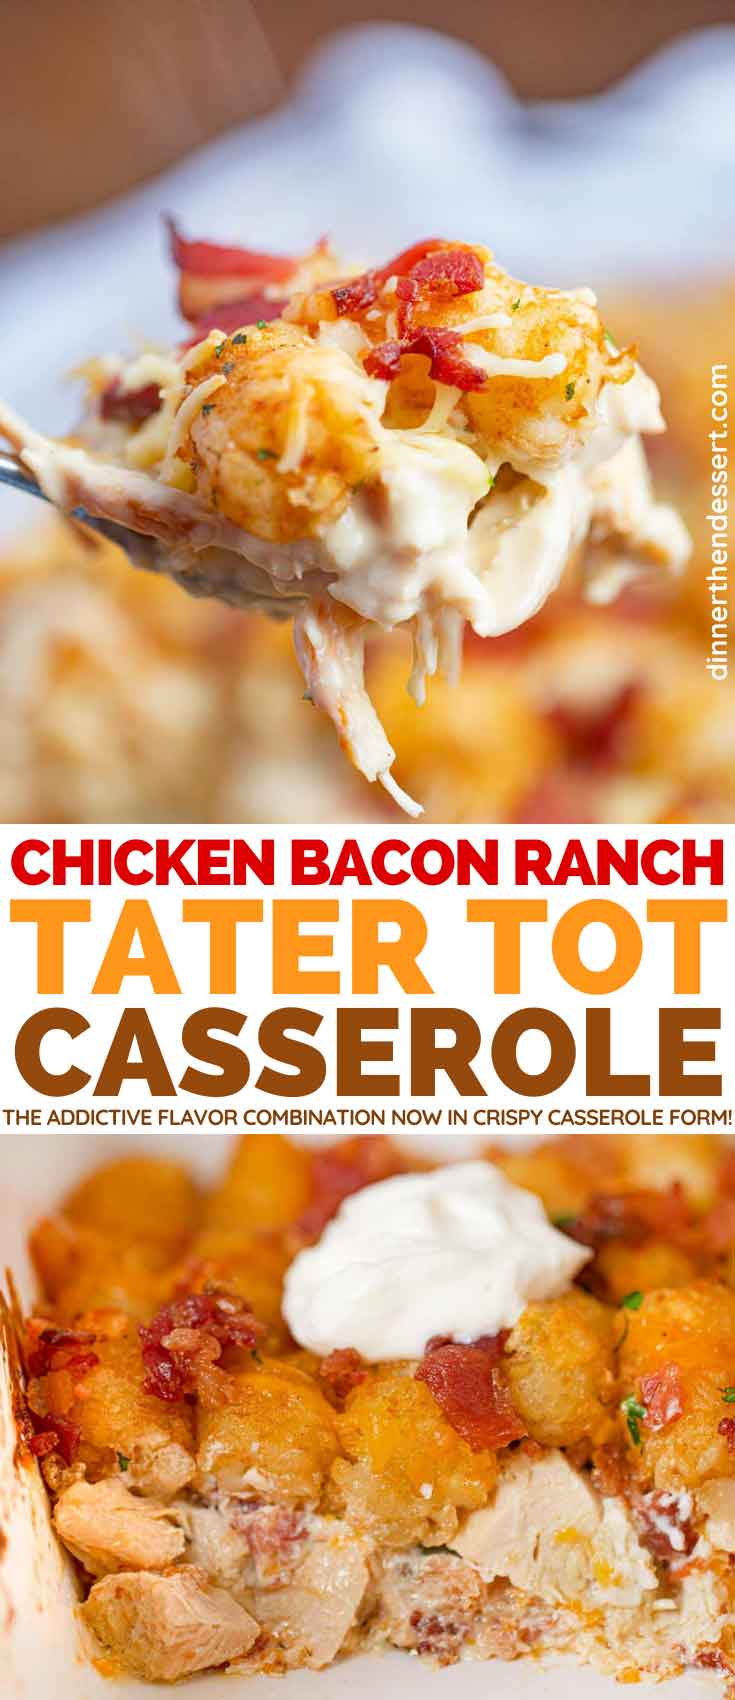 https://dinnerthendessert.com/wp-content/uploads/2020/02/Chicken-Bacon-Ranch-Tater-Tot-Casserole-L.jpg